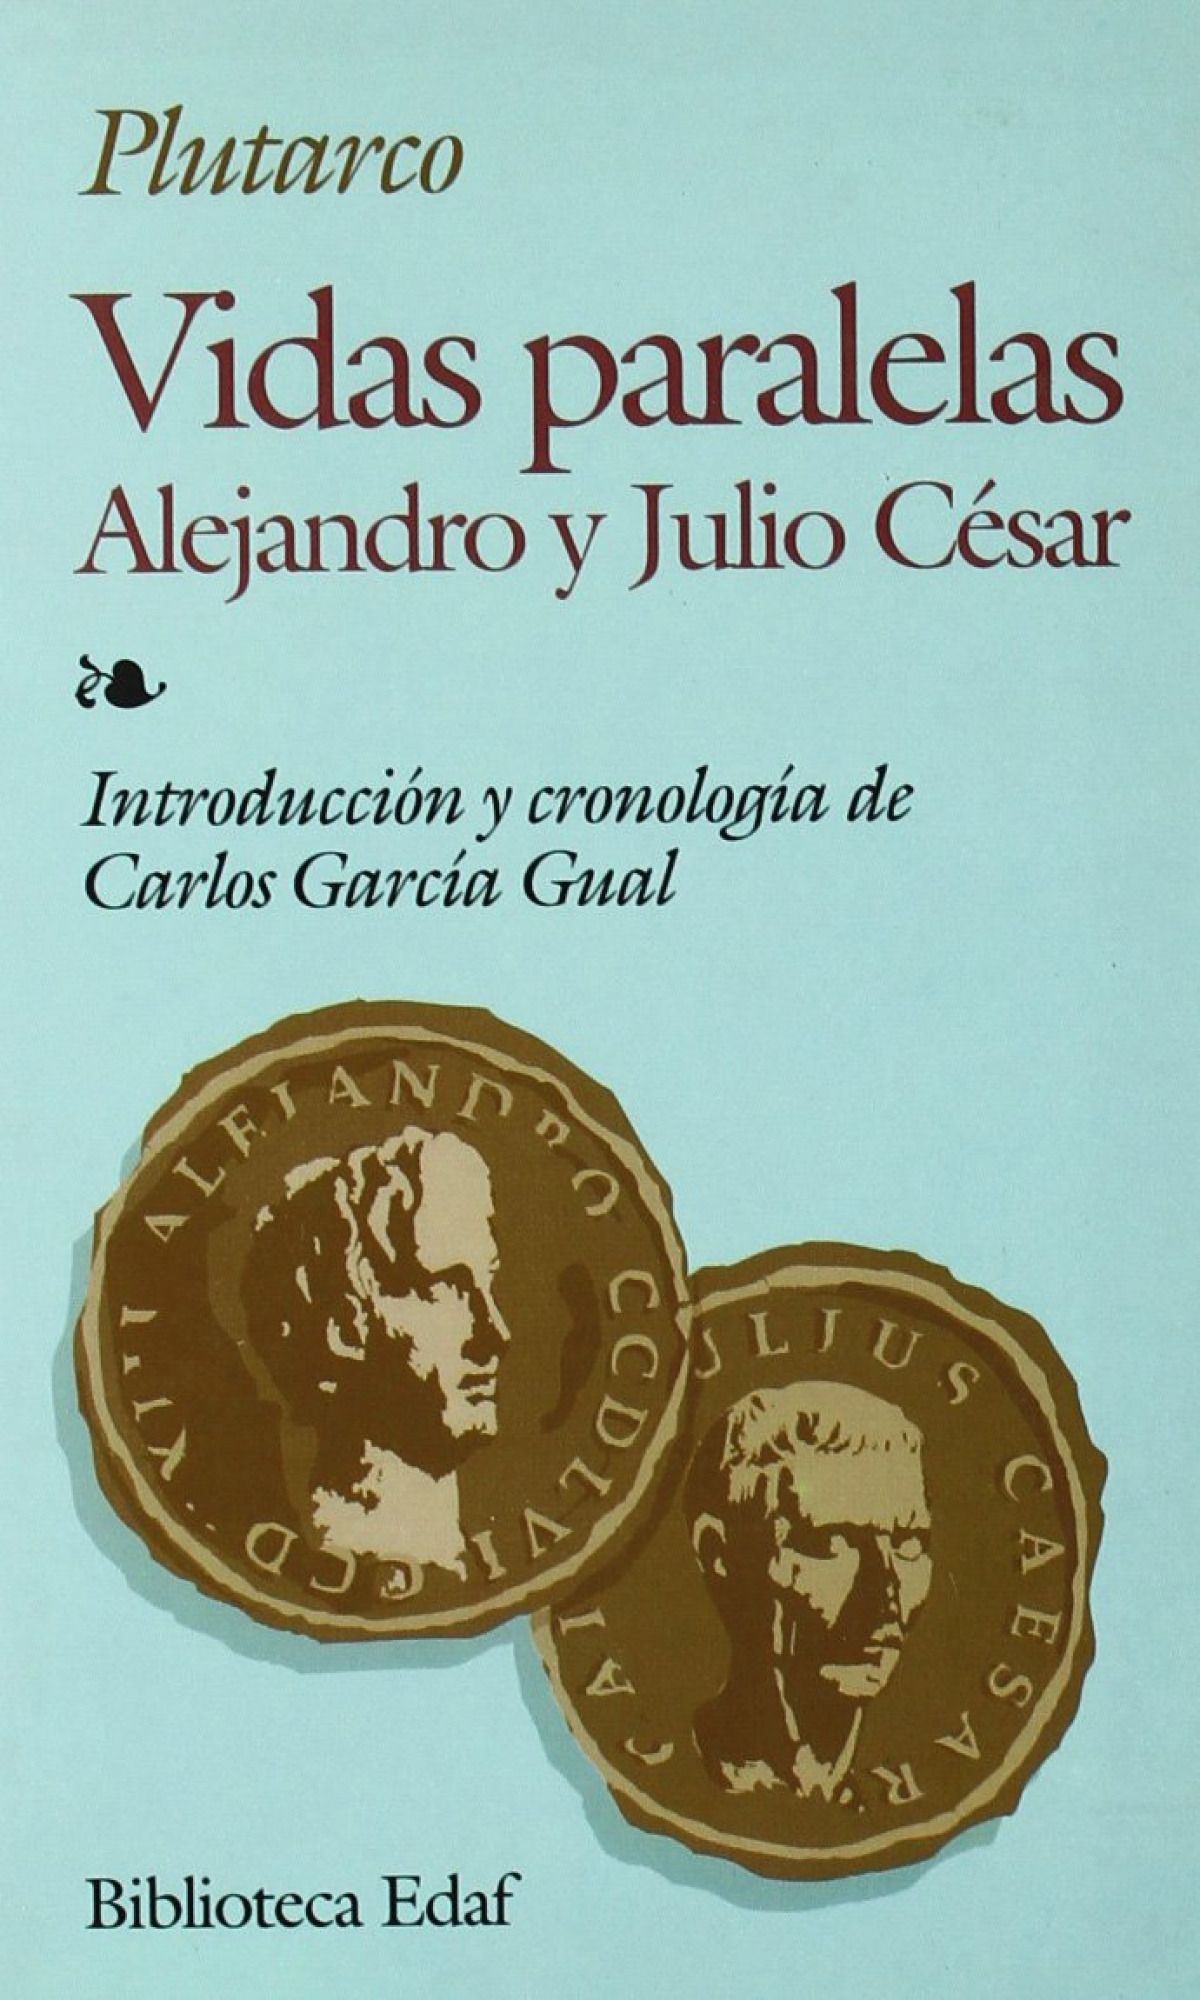 Vidas paralelas, alejandro y julio cesar - Plutarco